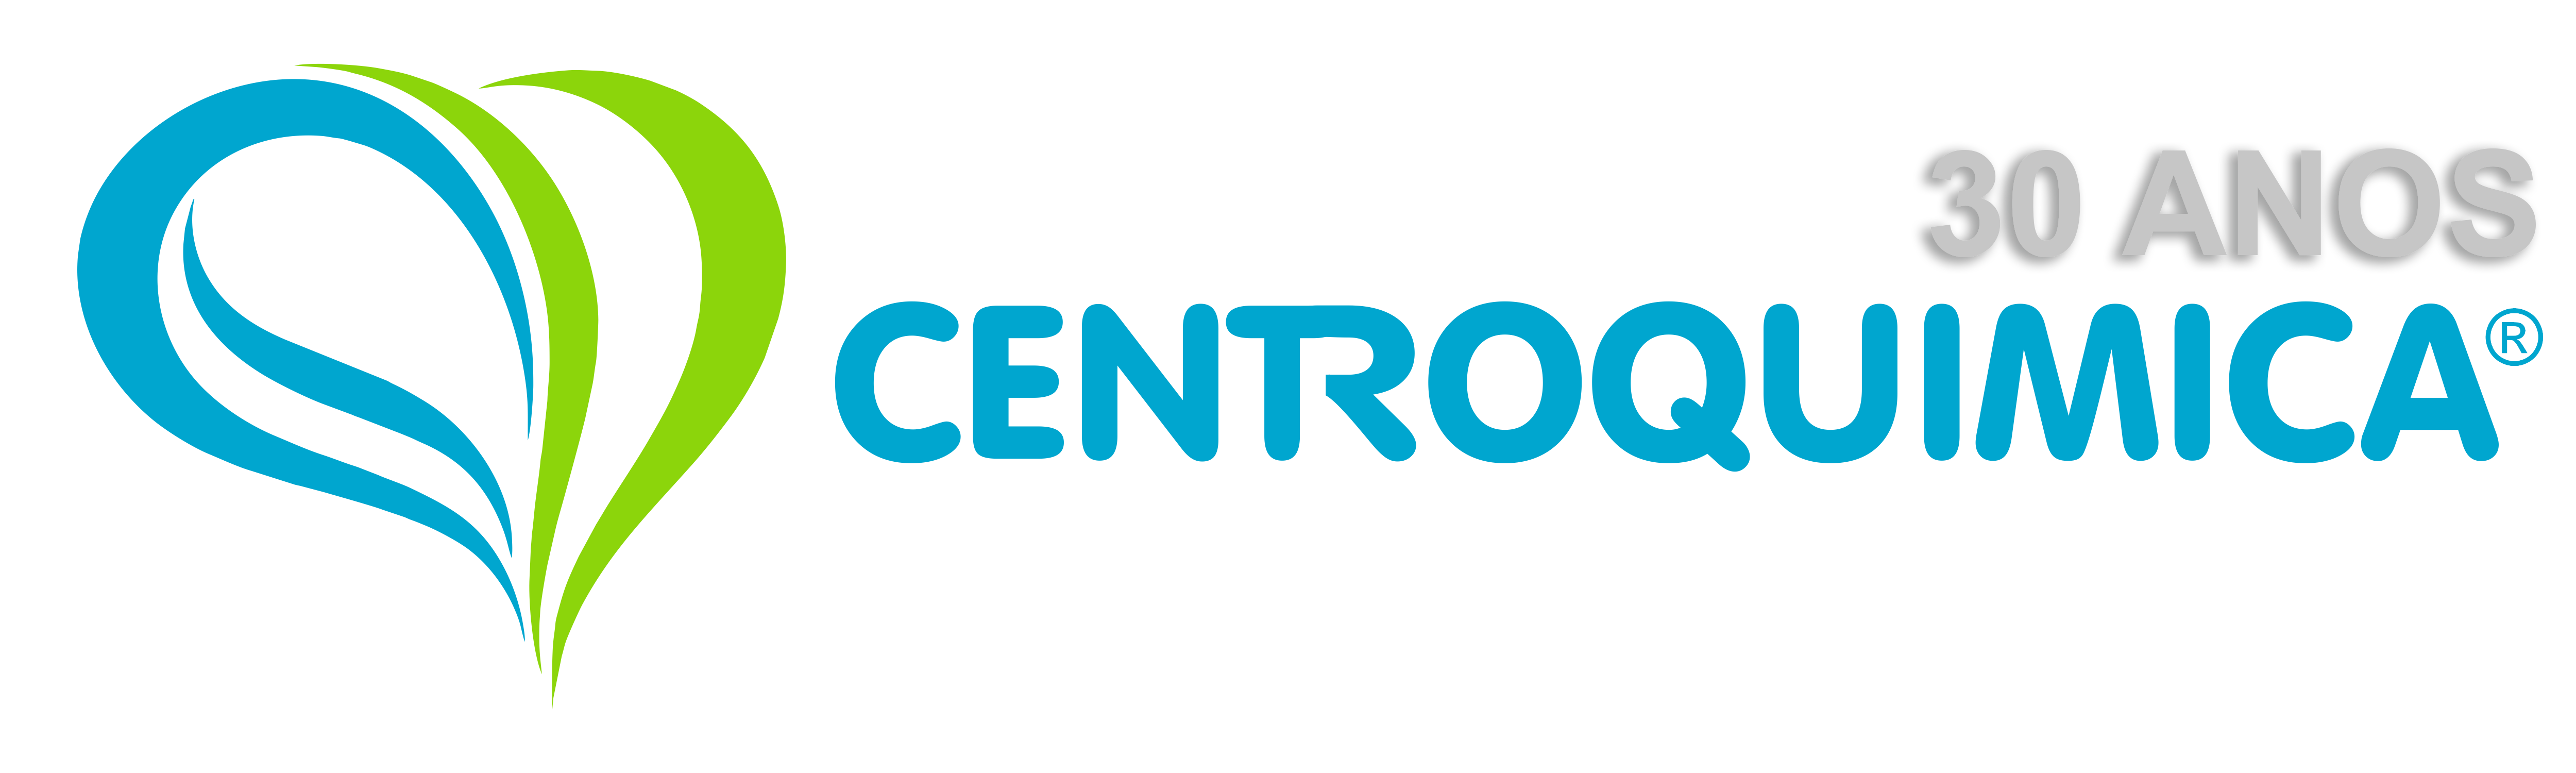 Logo_Centroquimica site